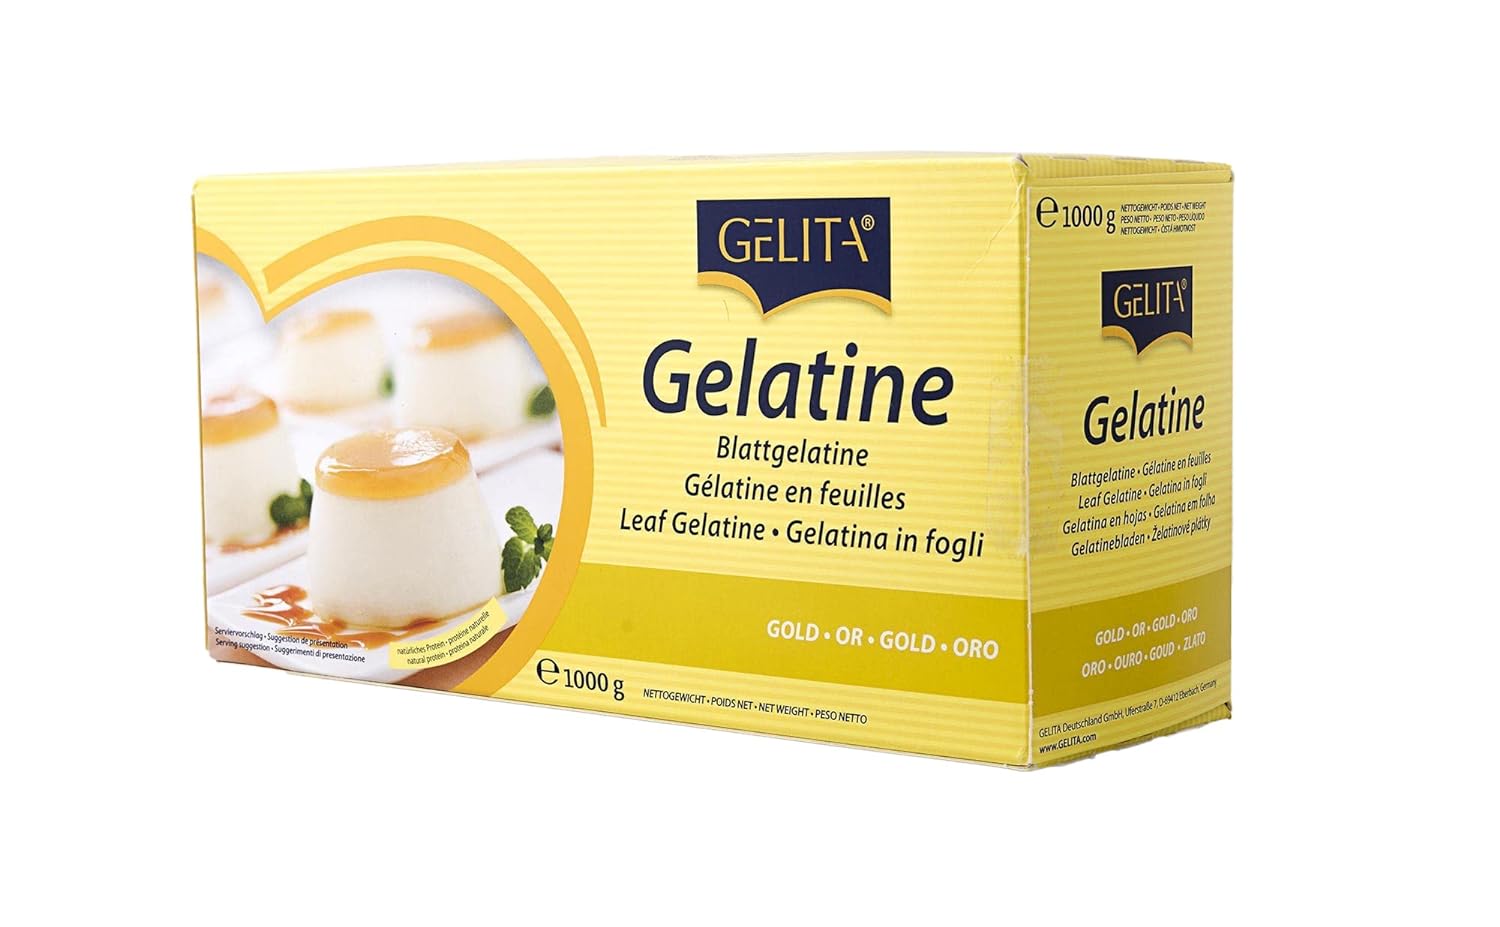 Gelita Gold Strength Leaf Gelatin - 500 Sheets/2.2 Pounds